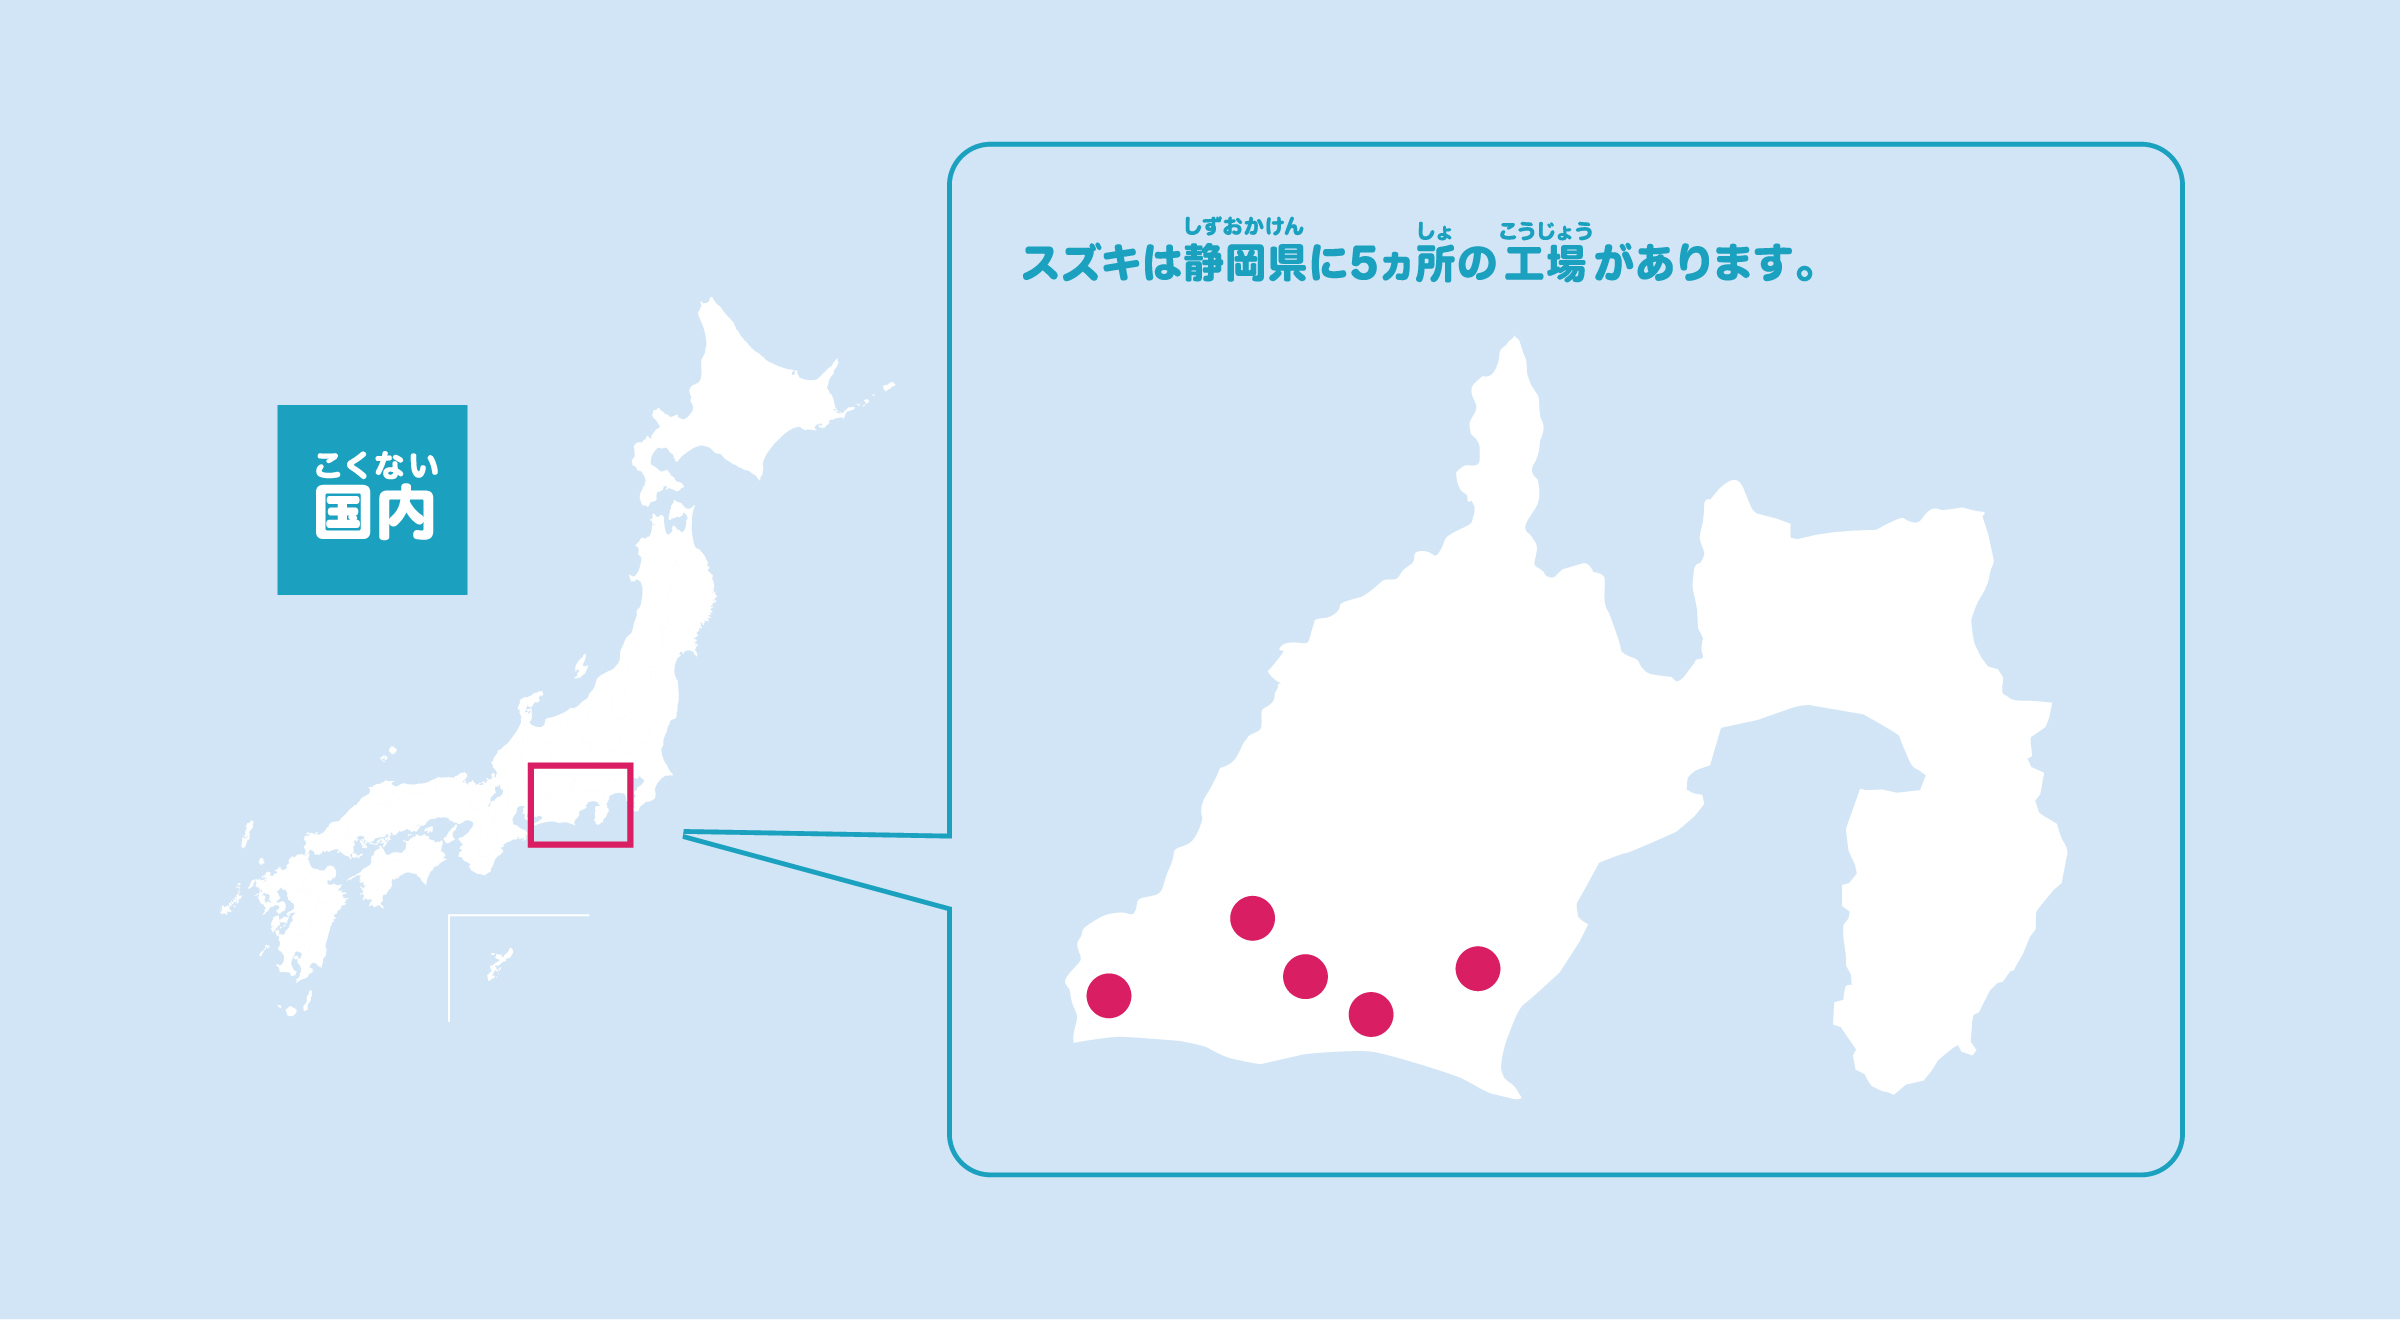 スズキは静岡県に5ヵ所の工場があります。